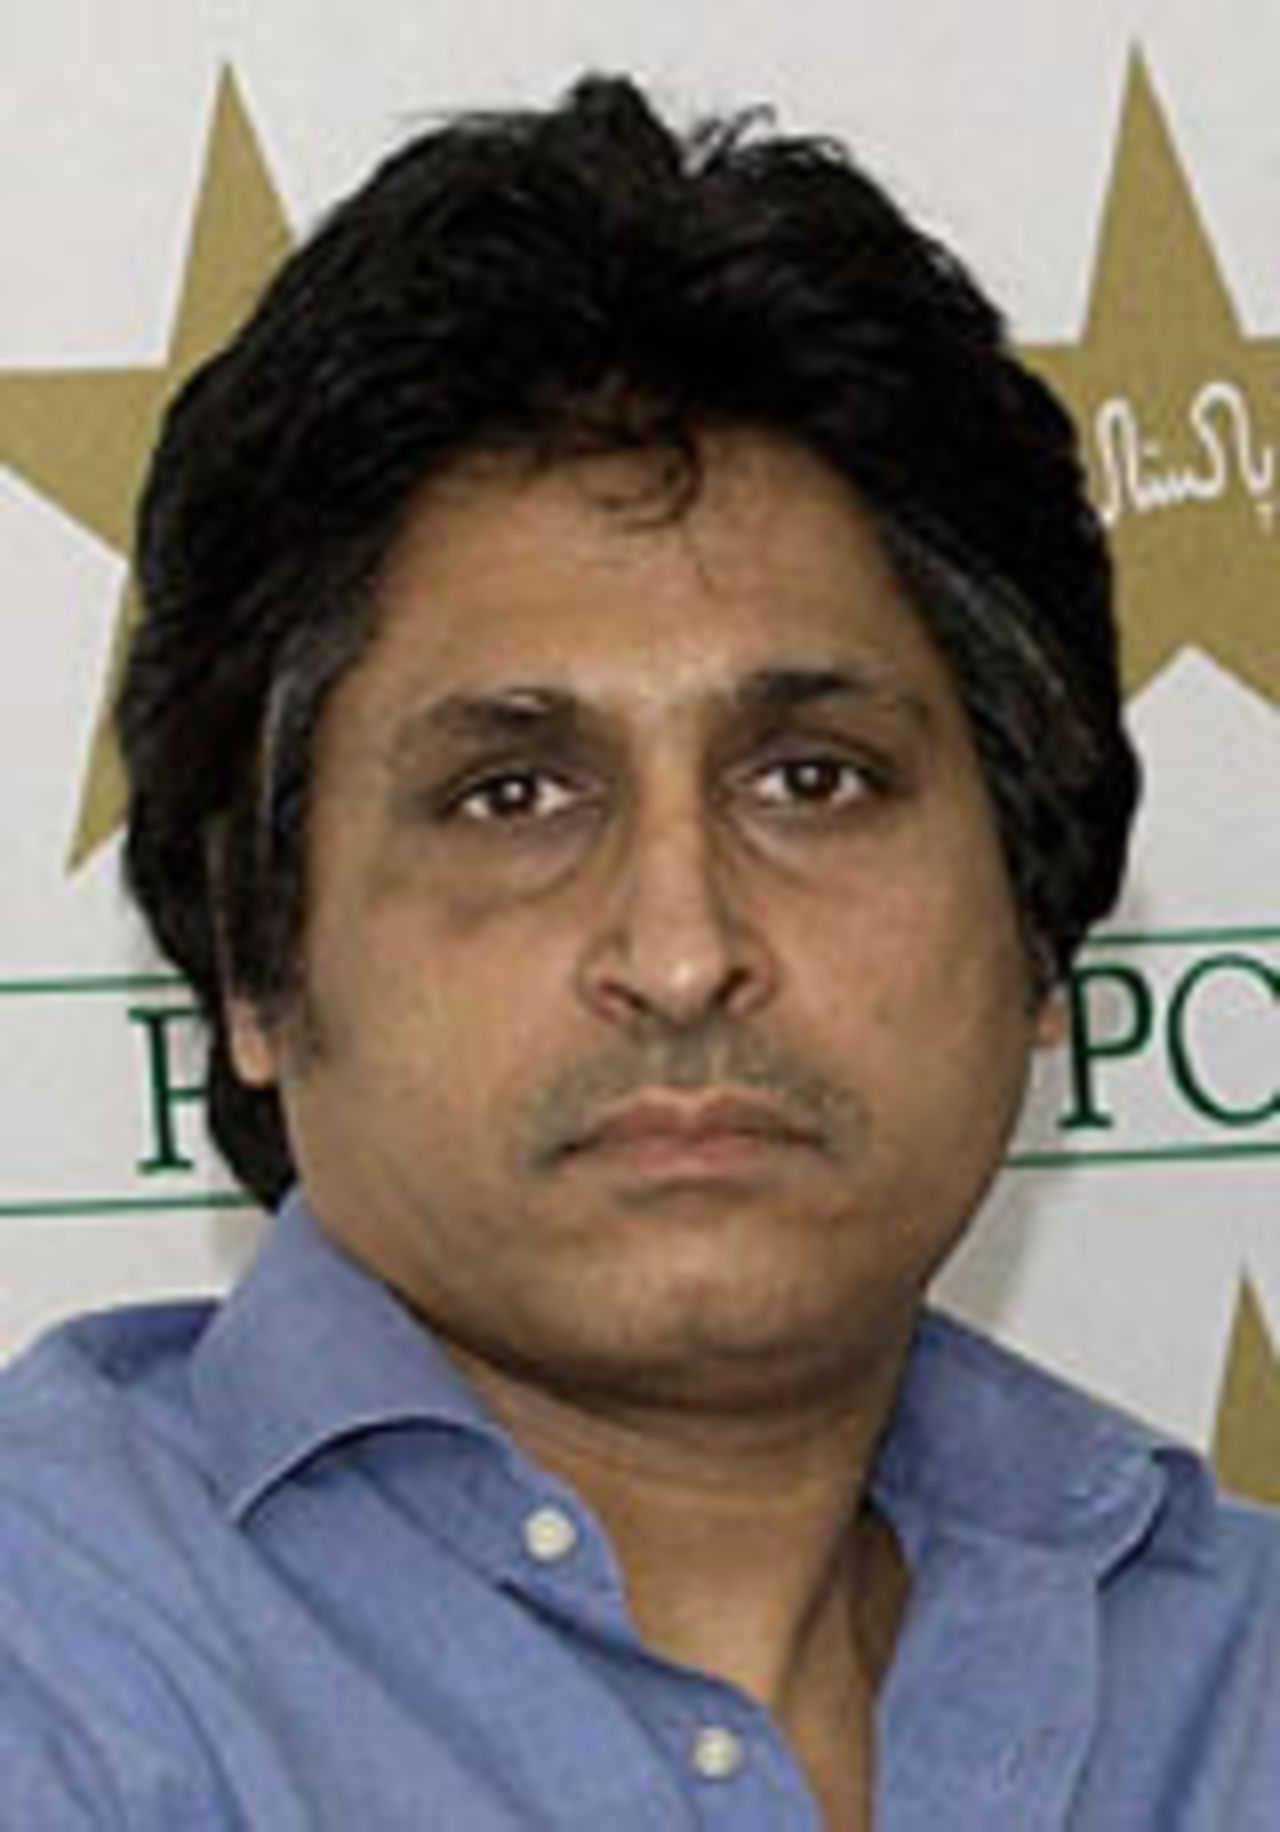 Pakistan board chief executive Rameez Raja